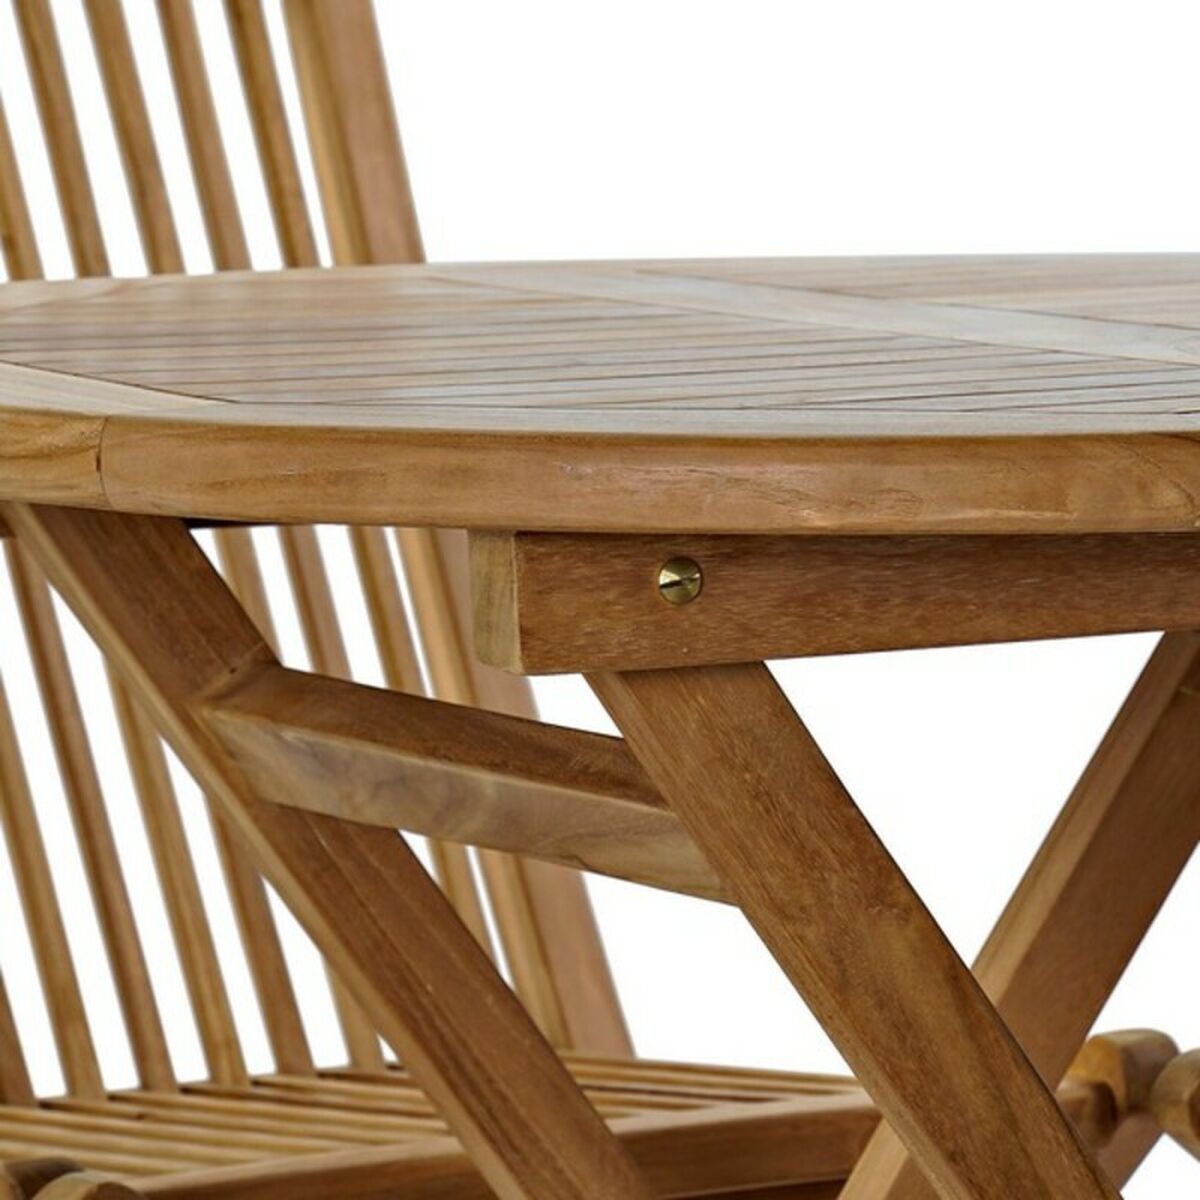 Ensemble de table avec 4 chaises DKD Home Decor 80 x 80 x 75 cm 90 cm (5 pc)